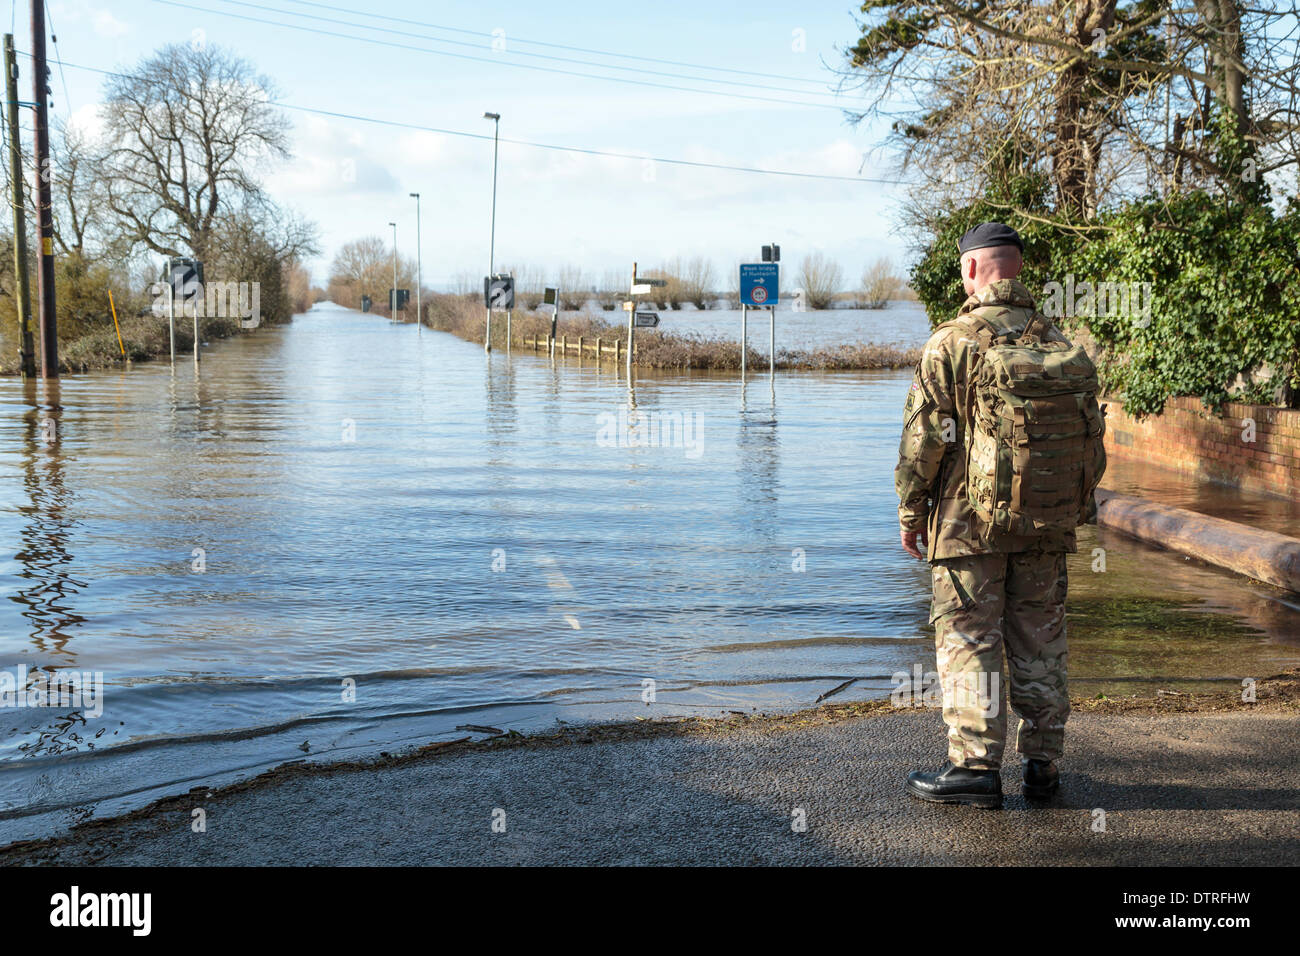 Burrowbridge, UK. Feb 22, 2014. Un commando de l'armée observe les inondations à Burrowbridge sur Somerset Levels, 22 février 2014. Une équipe de soldats hautement qualifiés a été rédigé dans l'pour transporter les approvisionnements de pétrole et de pièces mécaniques pour Saltmoor où la station de pompage de l'eau Madikwe River Lodge est pompée dans la rivière à marées Parrett pour apporter du secours à la zone inondée. Ce sont les pires inondations dans les niveaux de Somerset dans l'histoire vivante. Banque D'Images